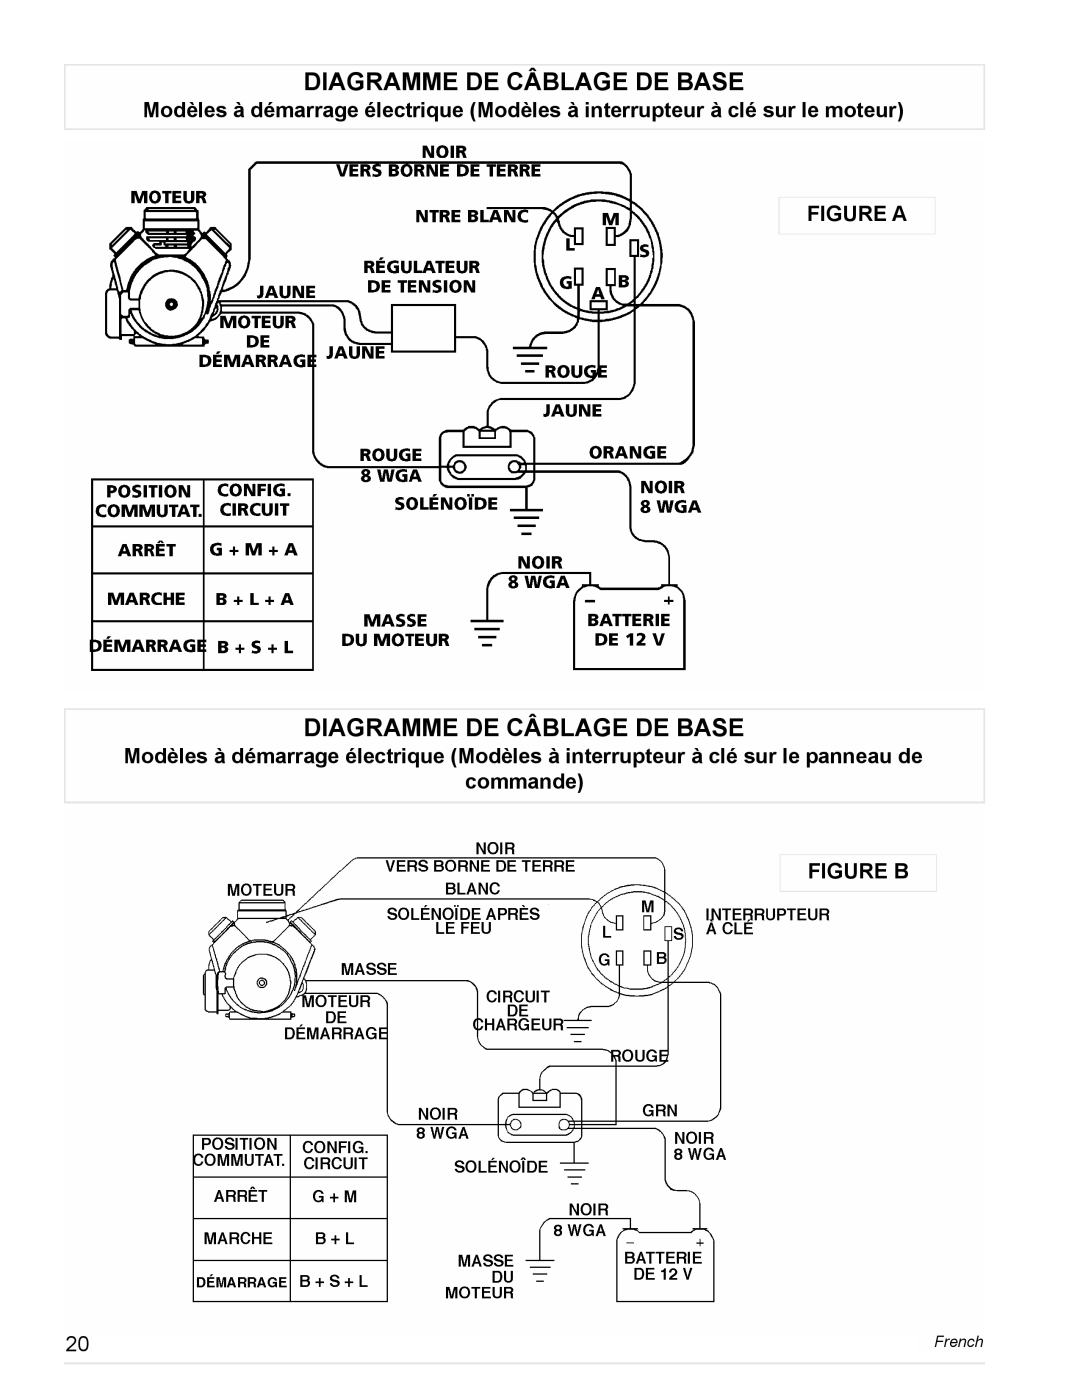 Powermate PL0473503, PM0478022, PM0473503, PM0477022 manual Diagramme De Câblage De Base, commande FIGURE B, Figure A, French 